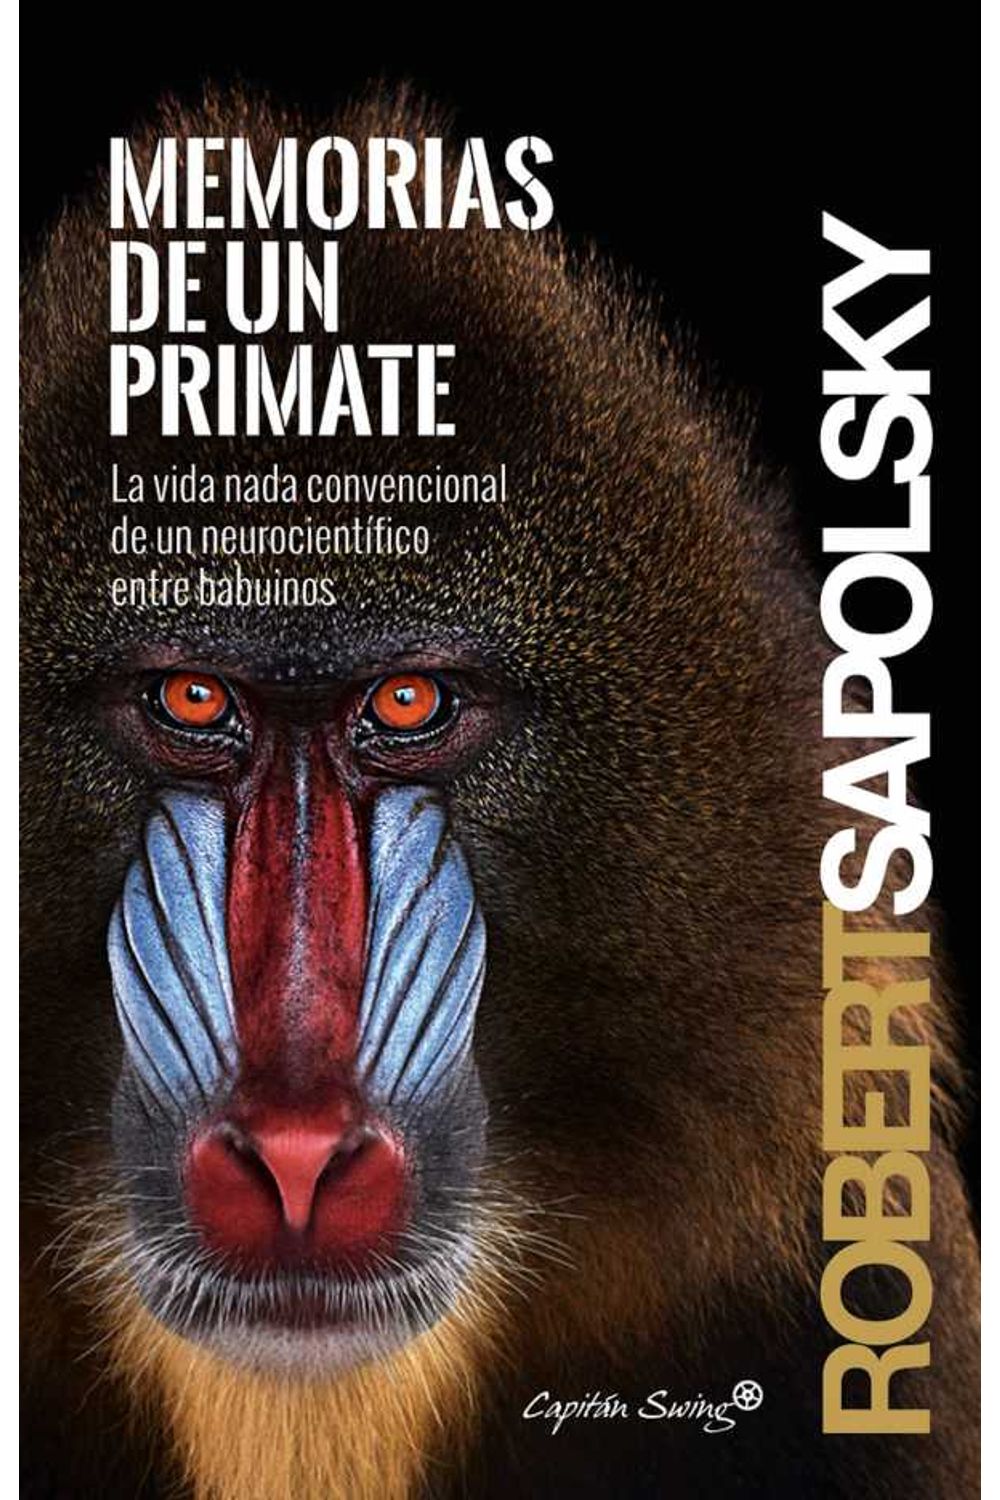 bw-memorias-de-un-primate-capitn-swing-libros-9788494531149